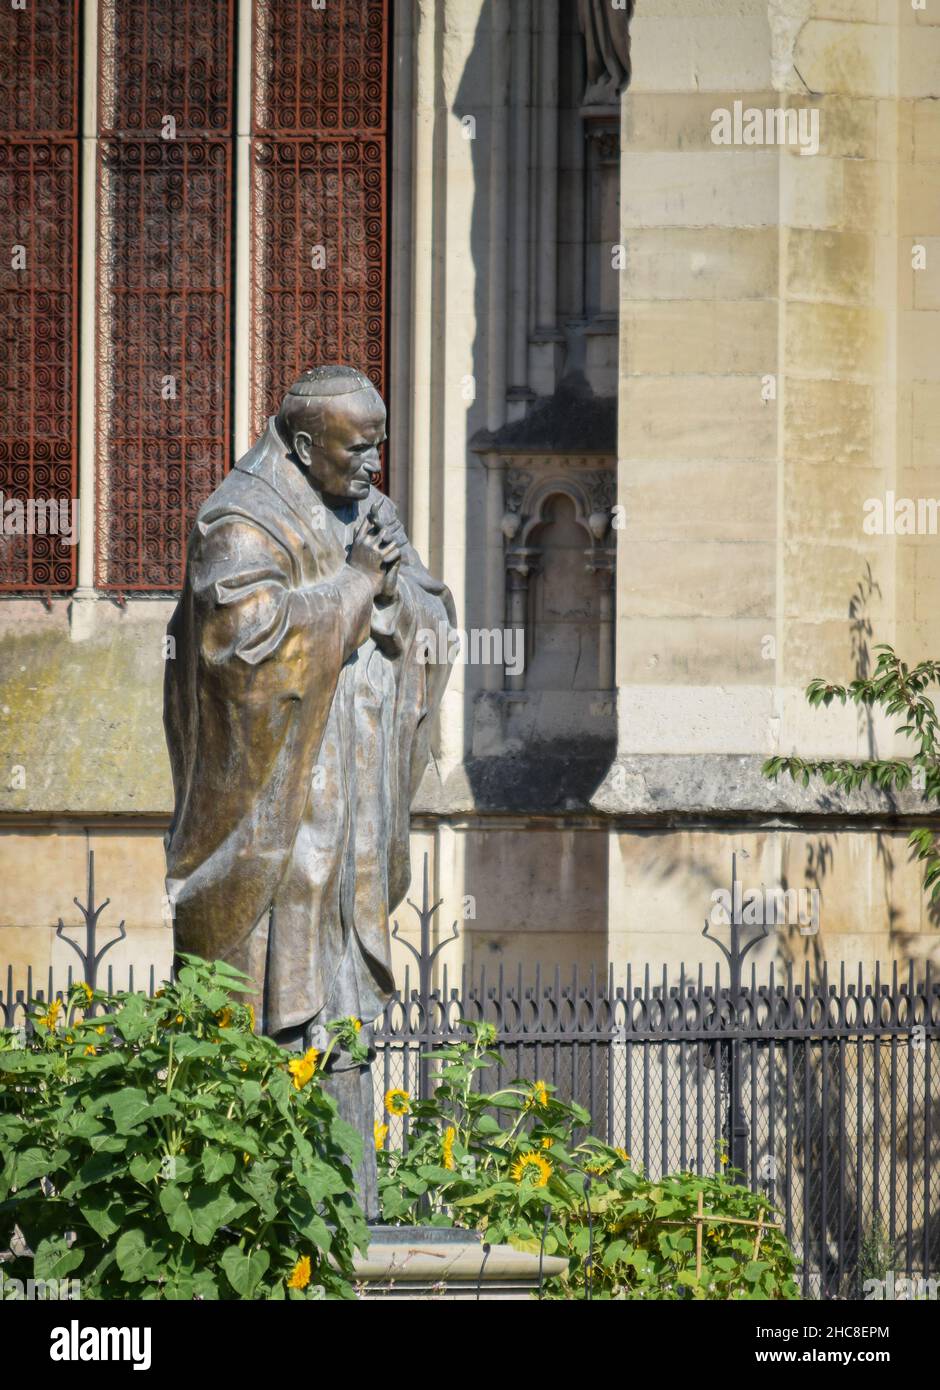 Escultura en memoria del papa Juan Pablo II en los jardines de la catedral de Notre Dame en Paris, Francia.JPG Stock Photo